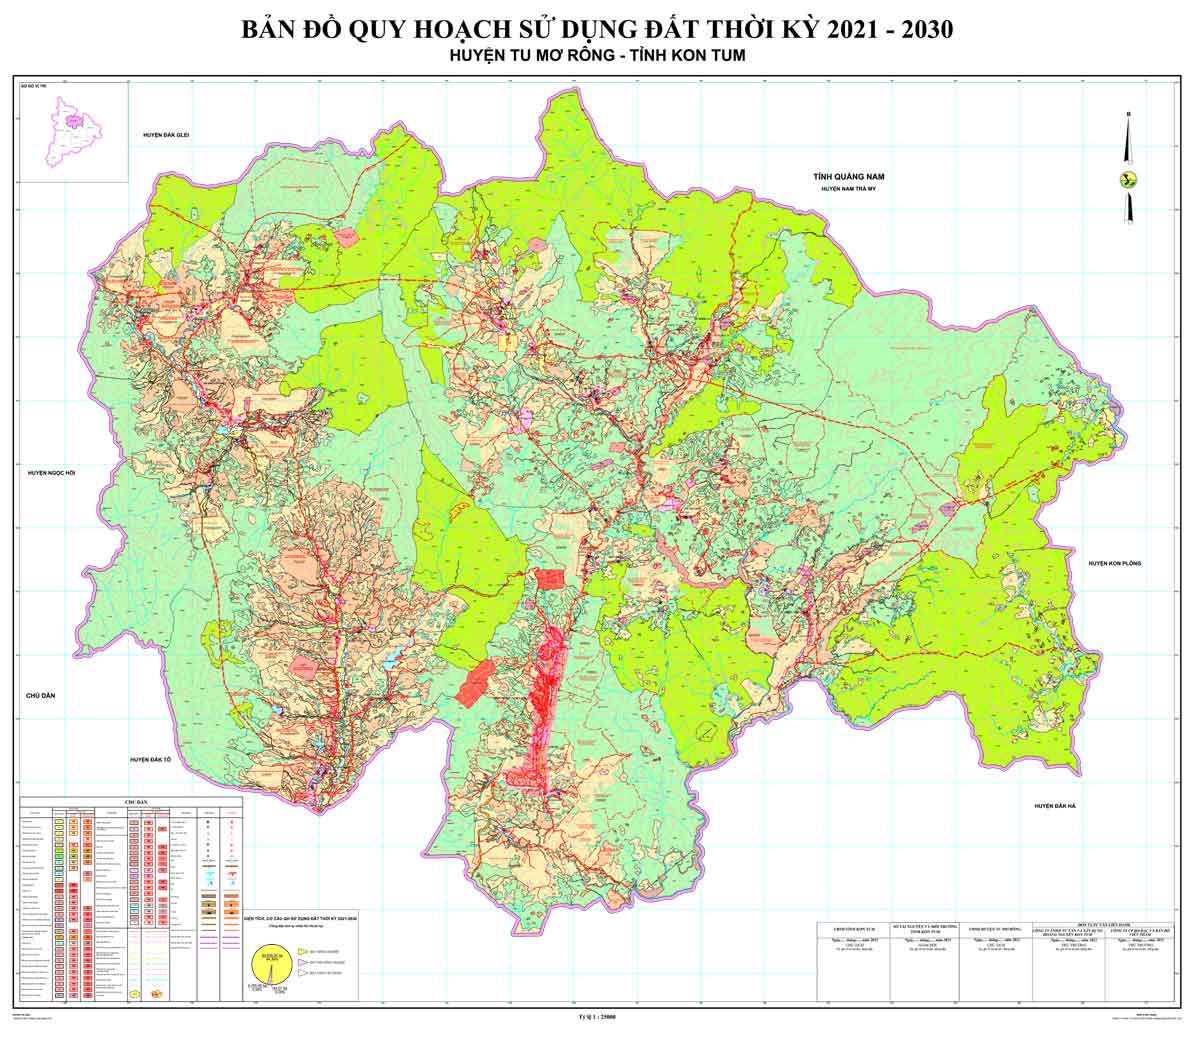 Bản đồ QHSDĐ huyện Tu Mơ Rông đến năm 2030